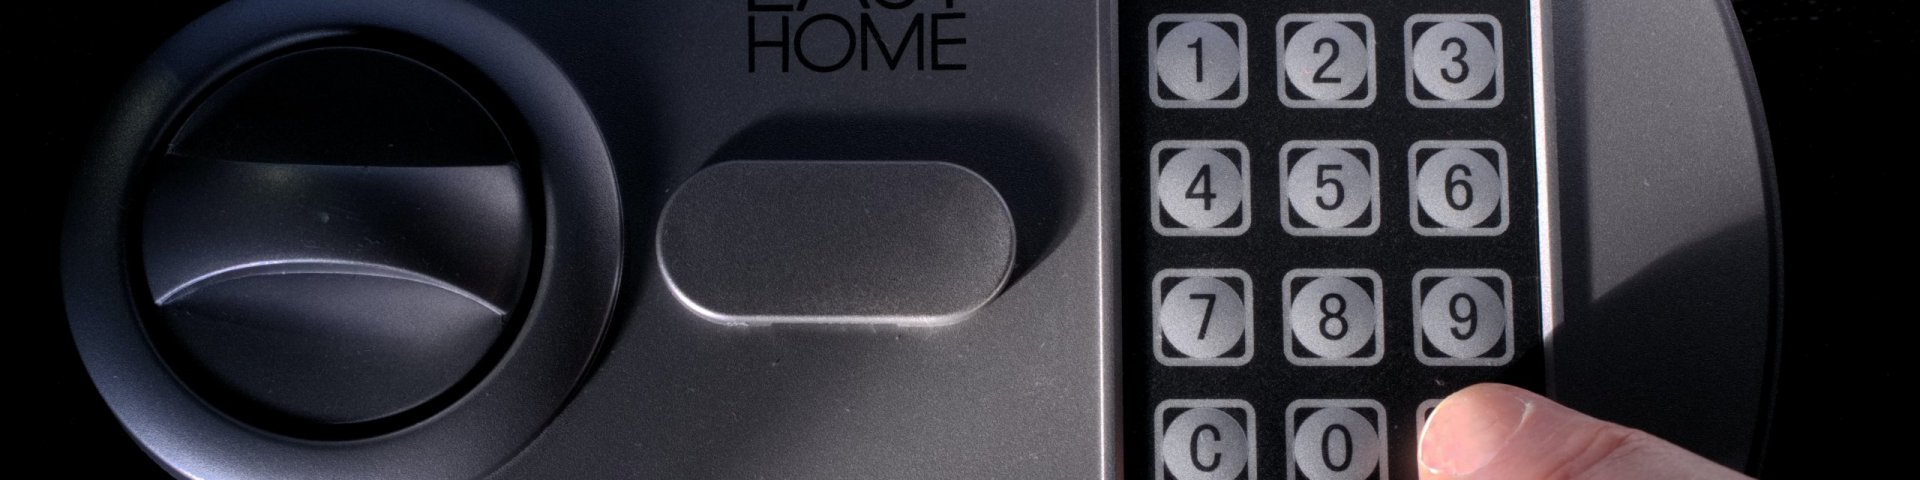 Notöffnung eines Tresors: Wie kann man einen Tresor ohne Schlüssel und Kombination öffnen?